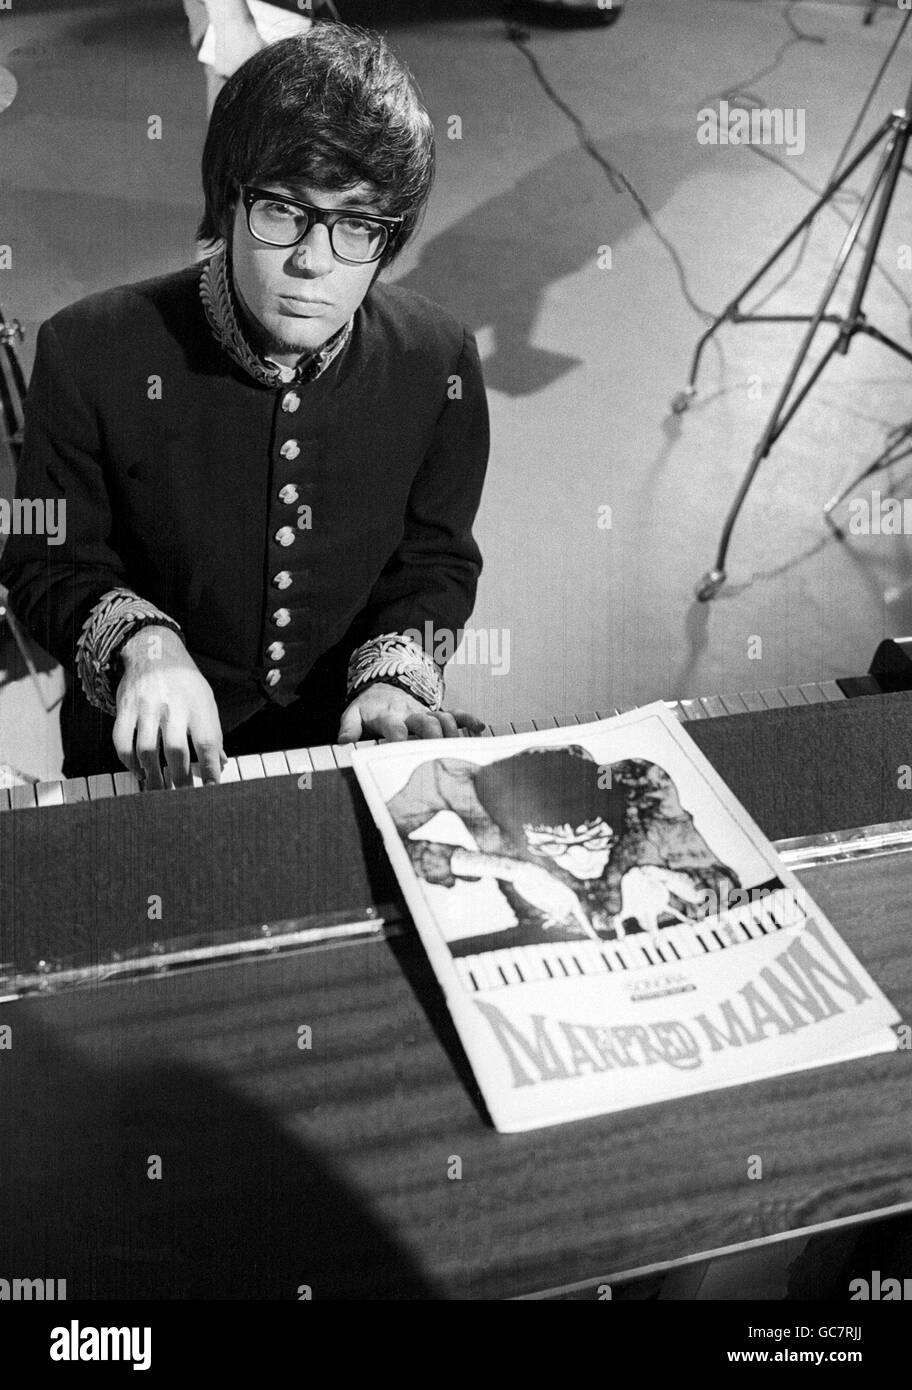 Manfred Mann au piano Banque D'Images